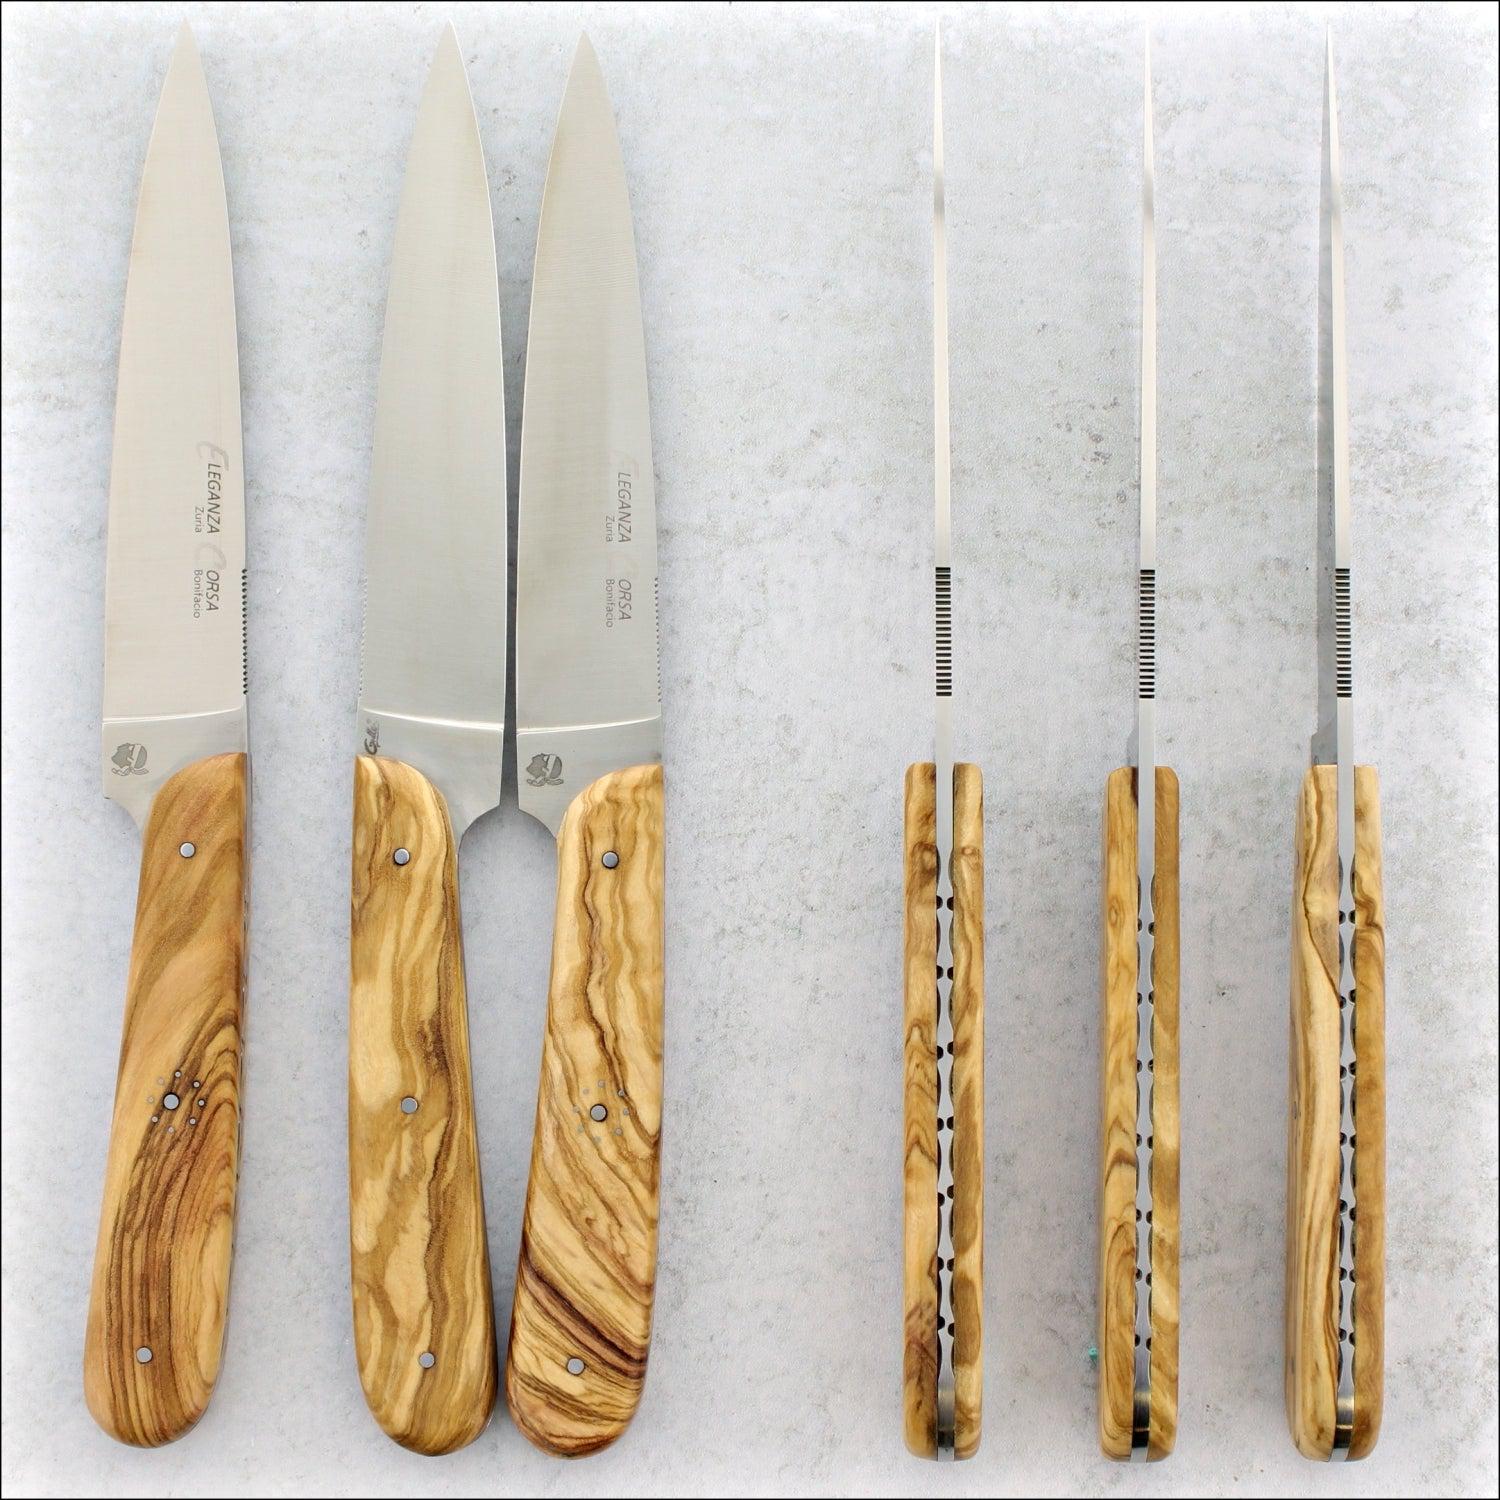 Eleganza Corsa Steak Knives - Olive Wood - Set of 6